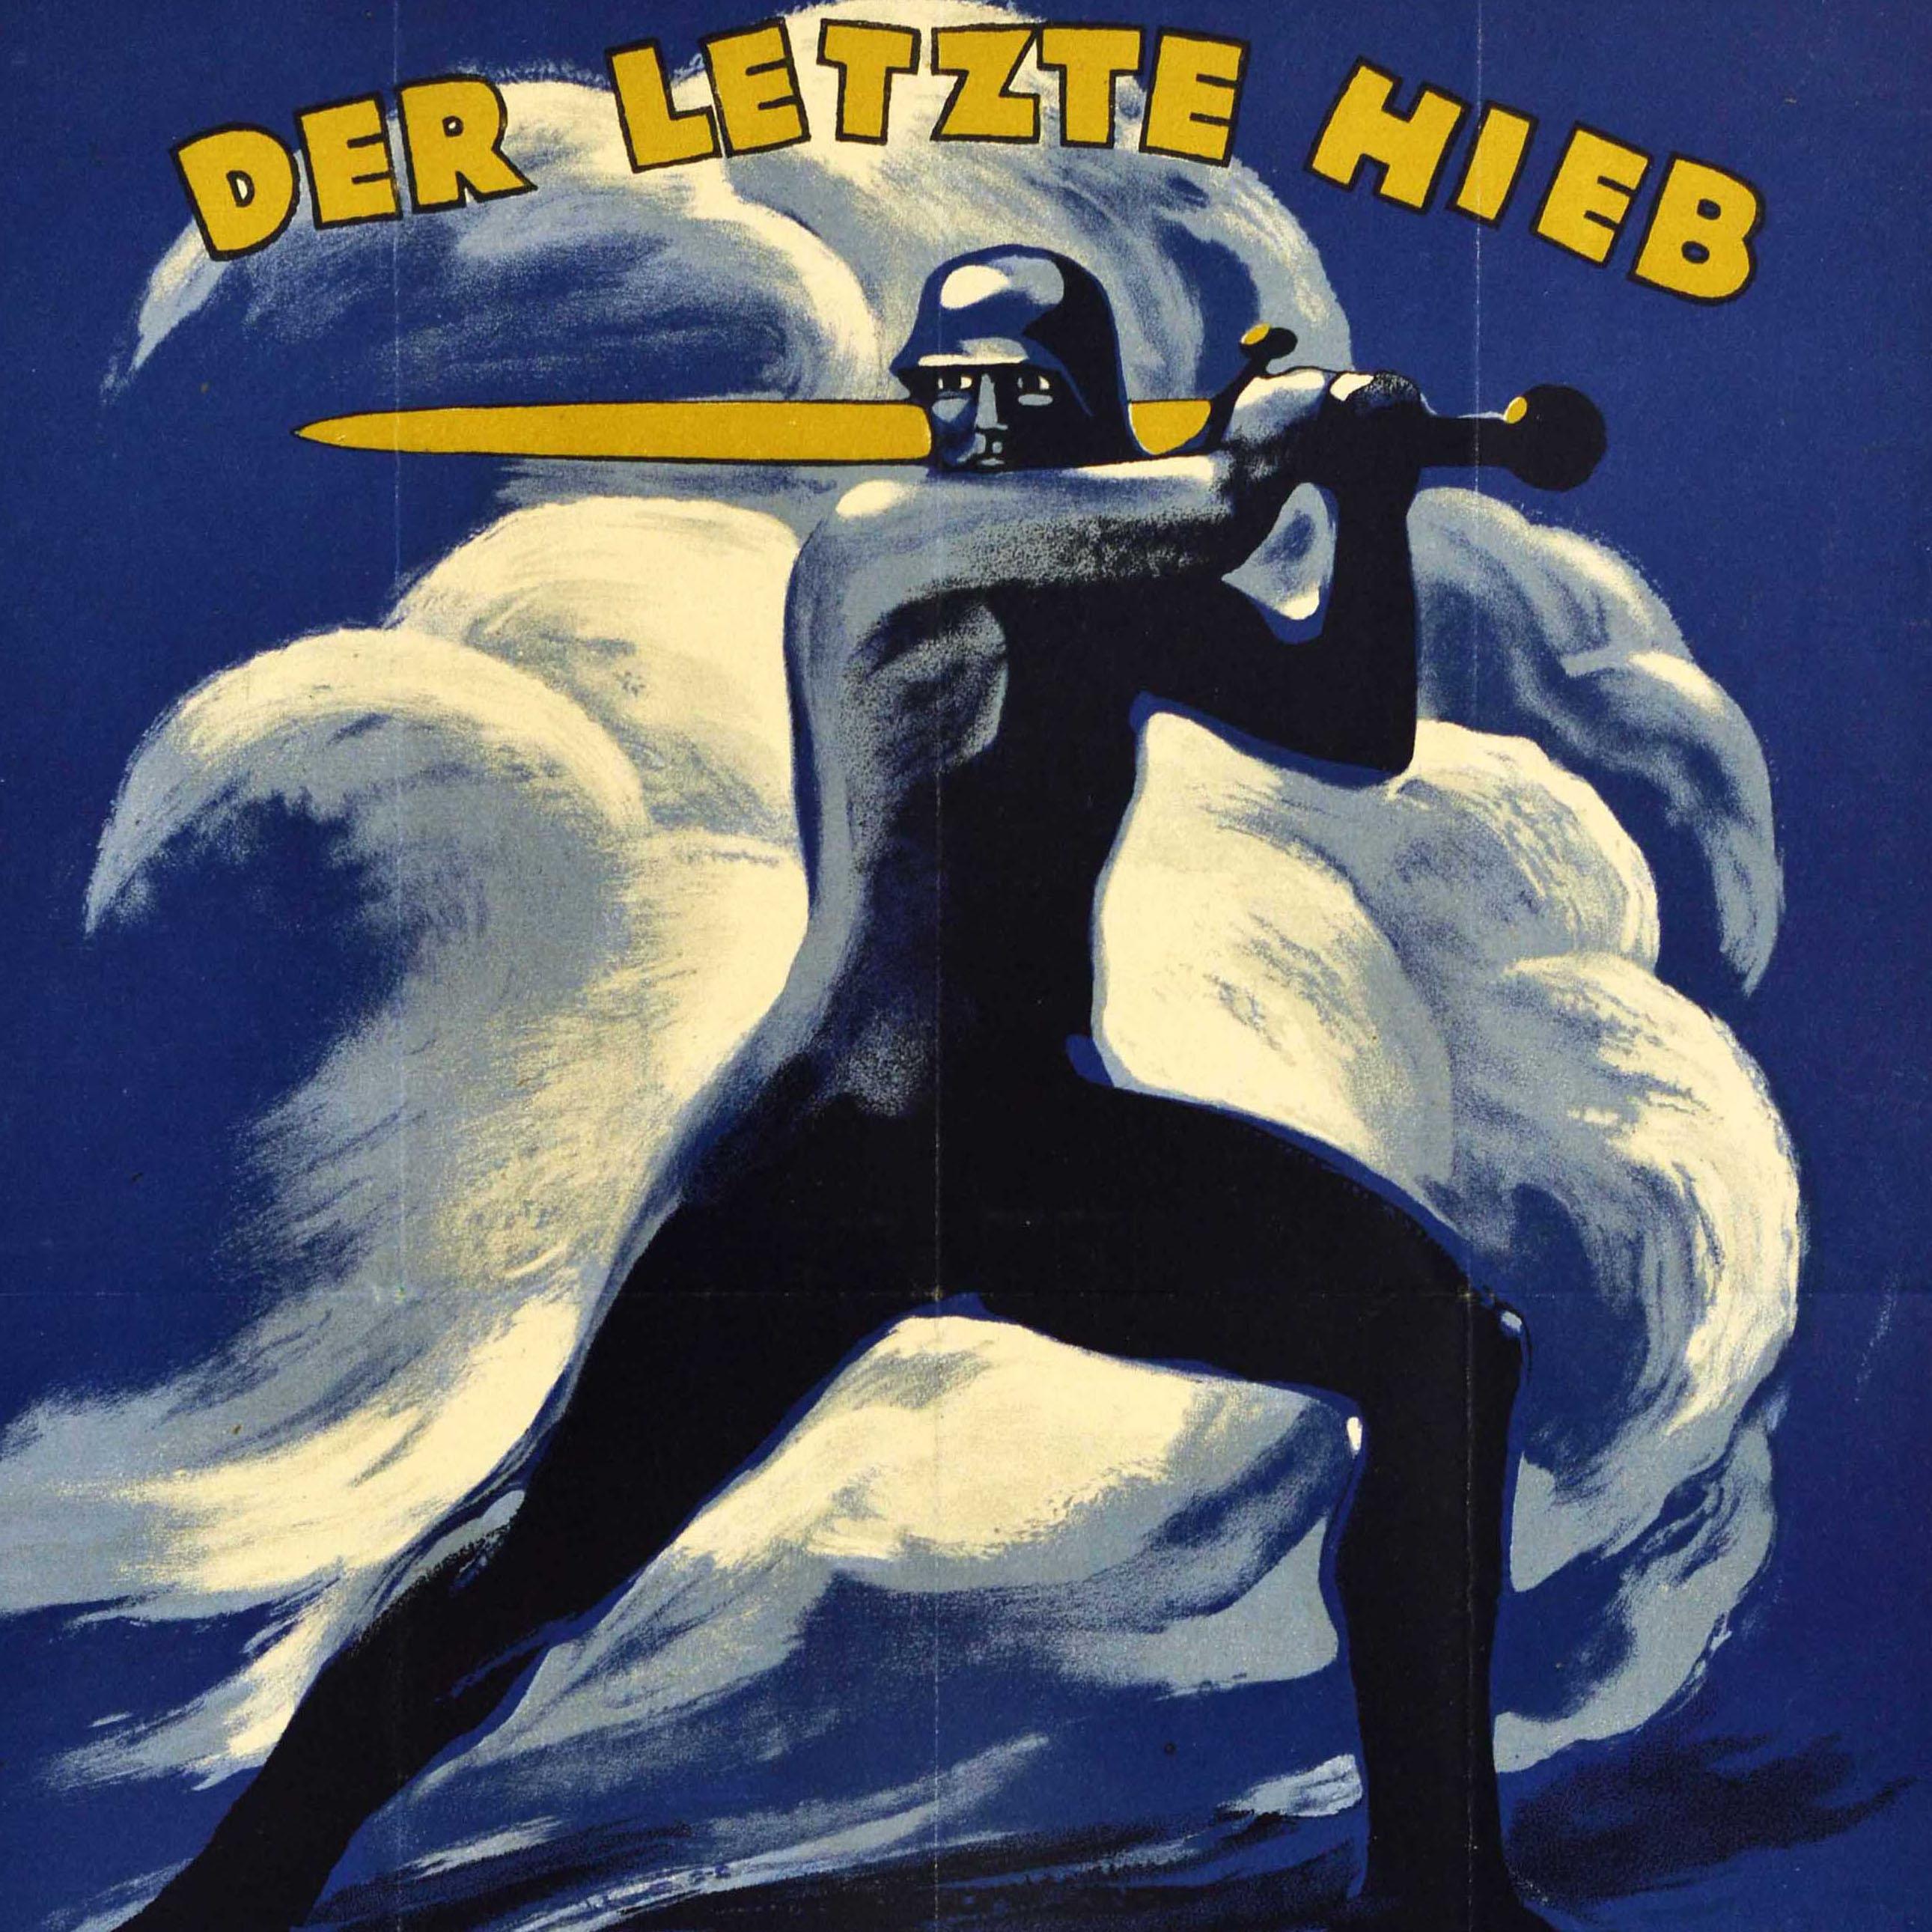 Original Antique World War One Poster Der Letzte Hieb WWI War Loan Soldier Art - Print by Unknown